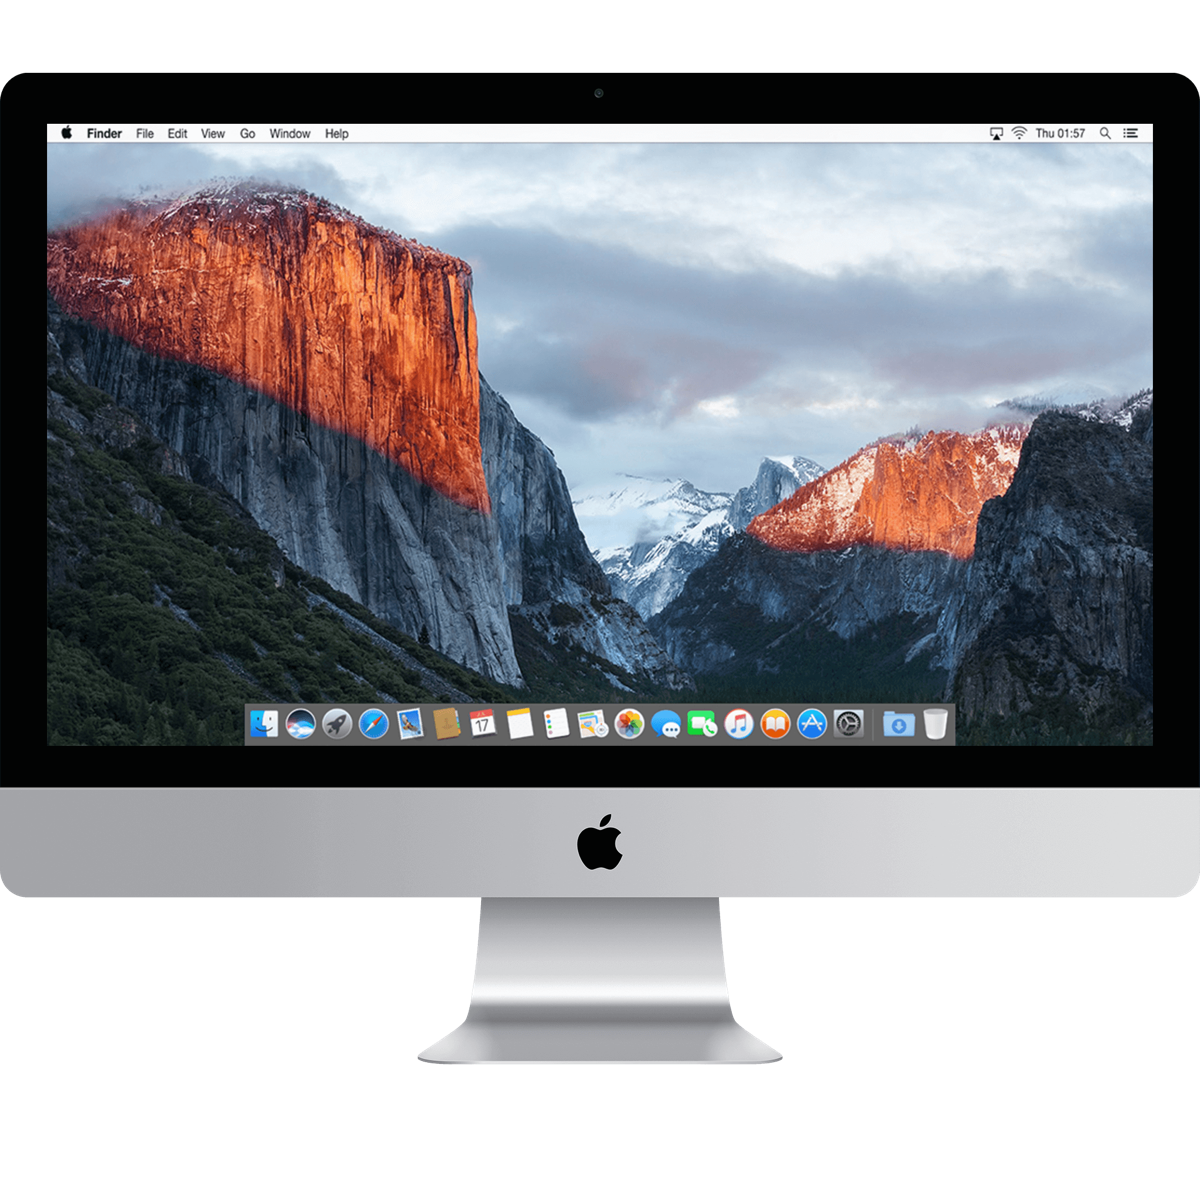 iMac 27-inch (5K) i7 4.0 8GB 256GB